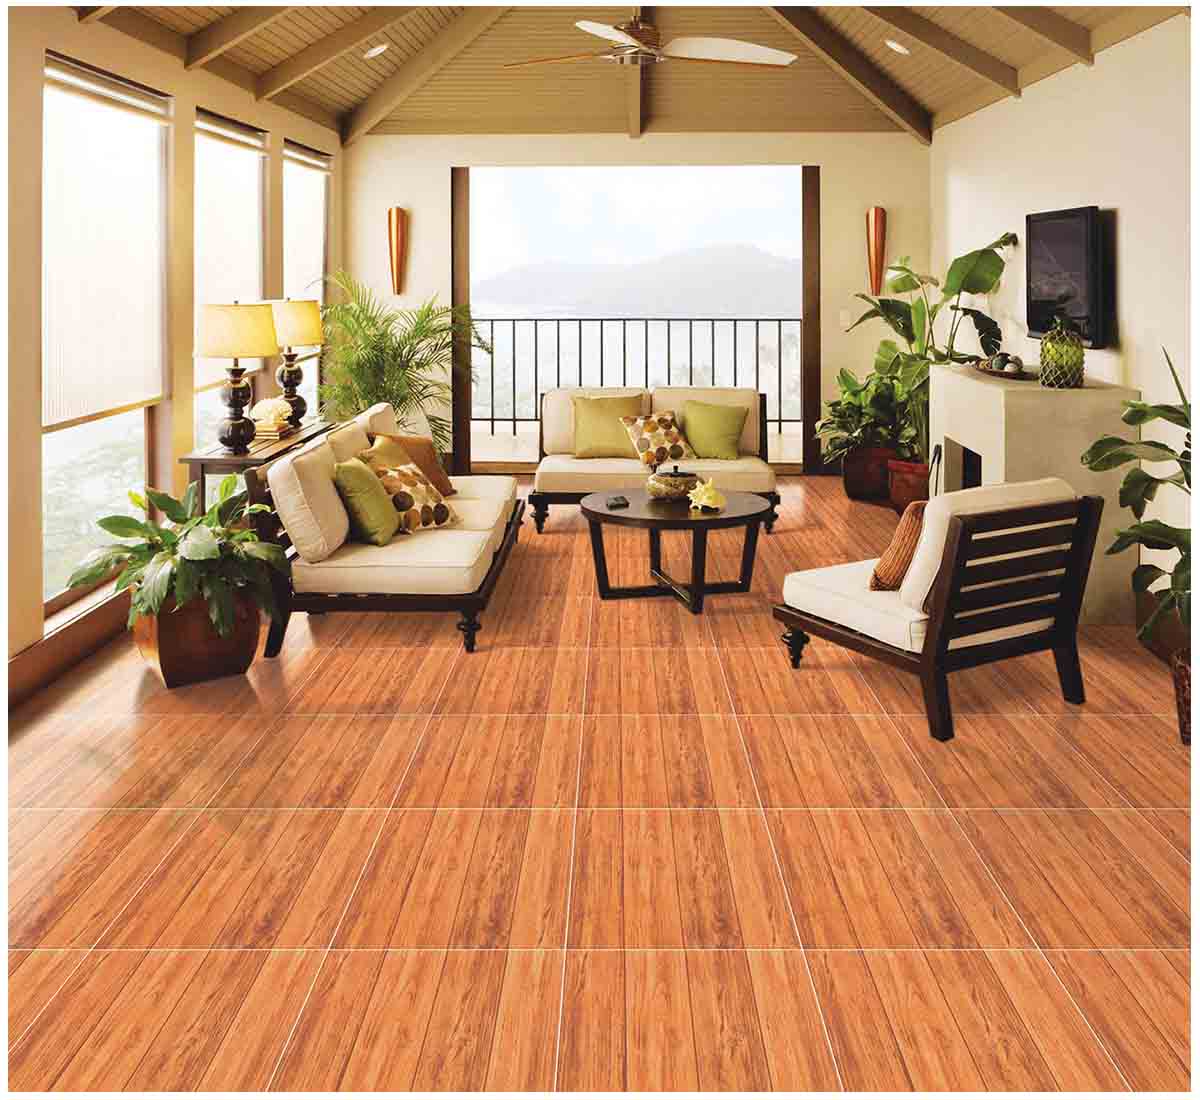 Top 20 mẫu gạch lát nền vân gỗ 60x60 viglacera đẹp nhất